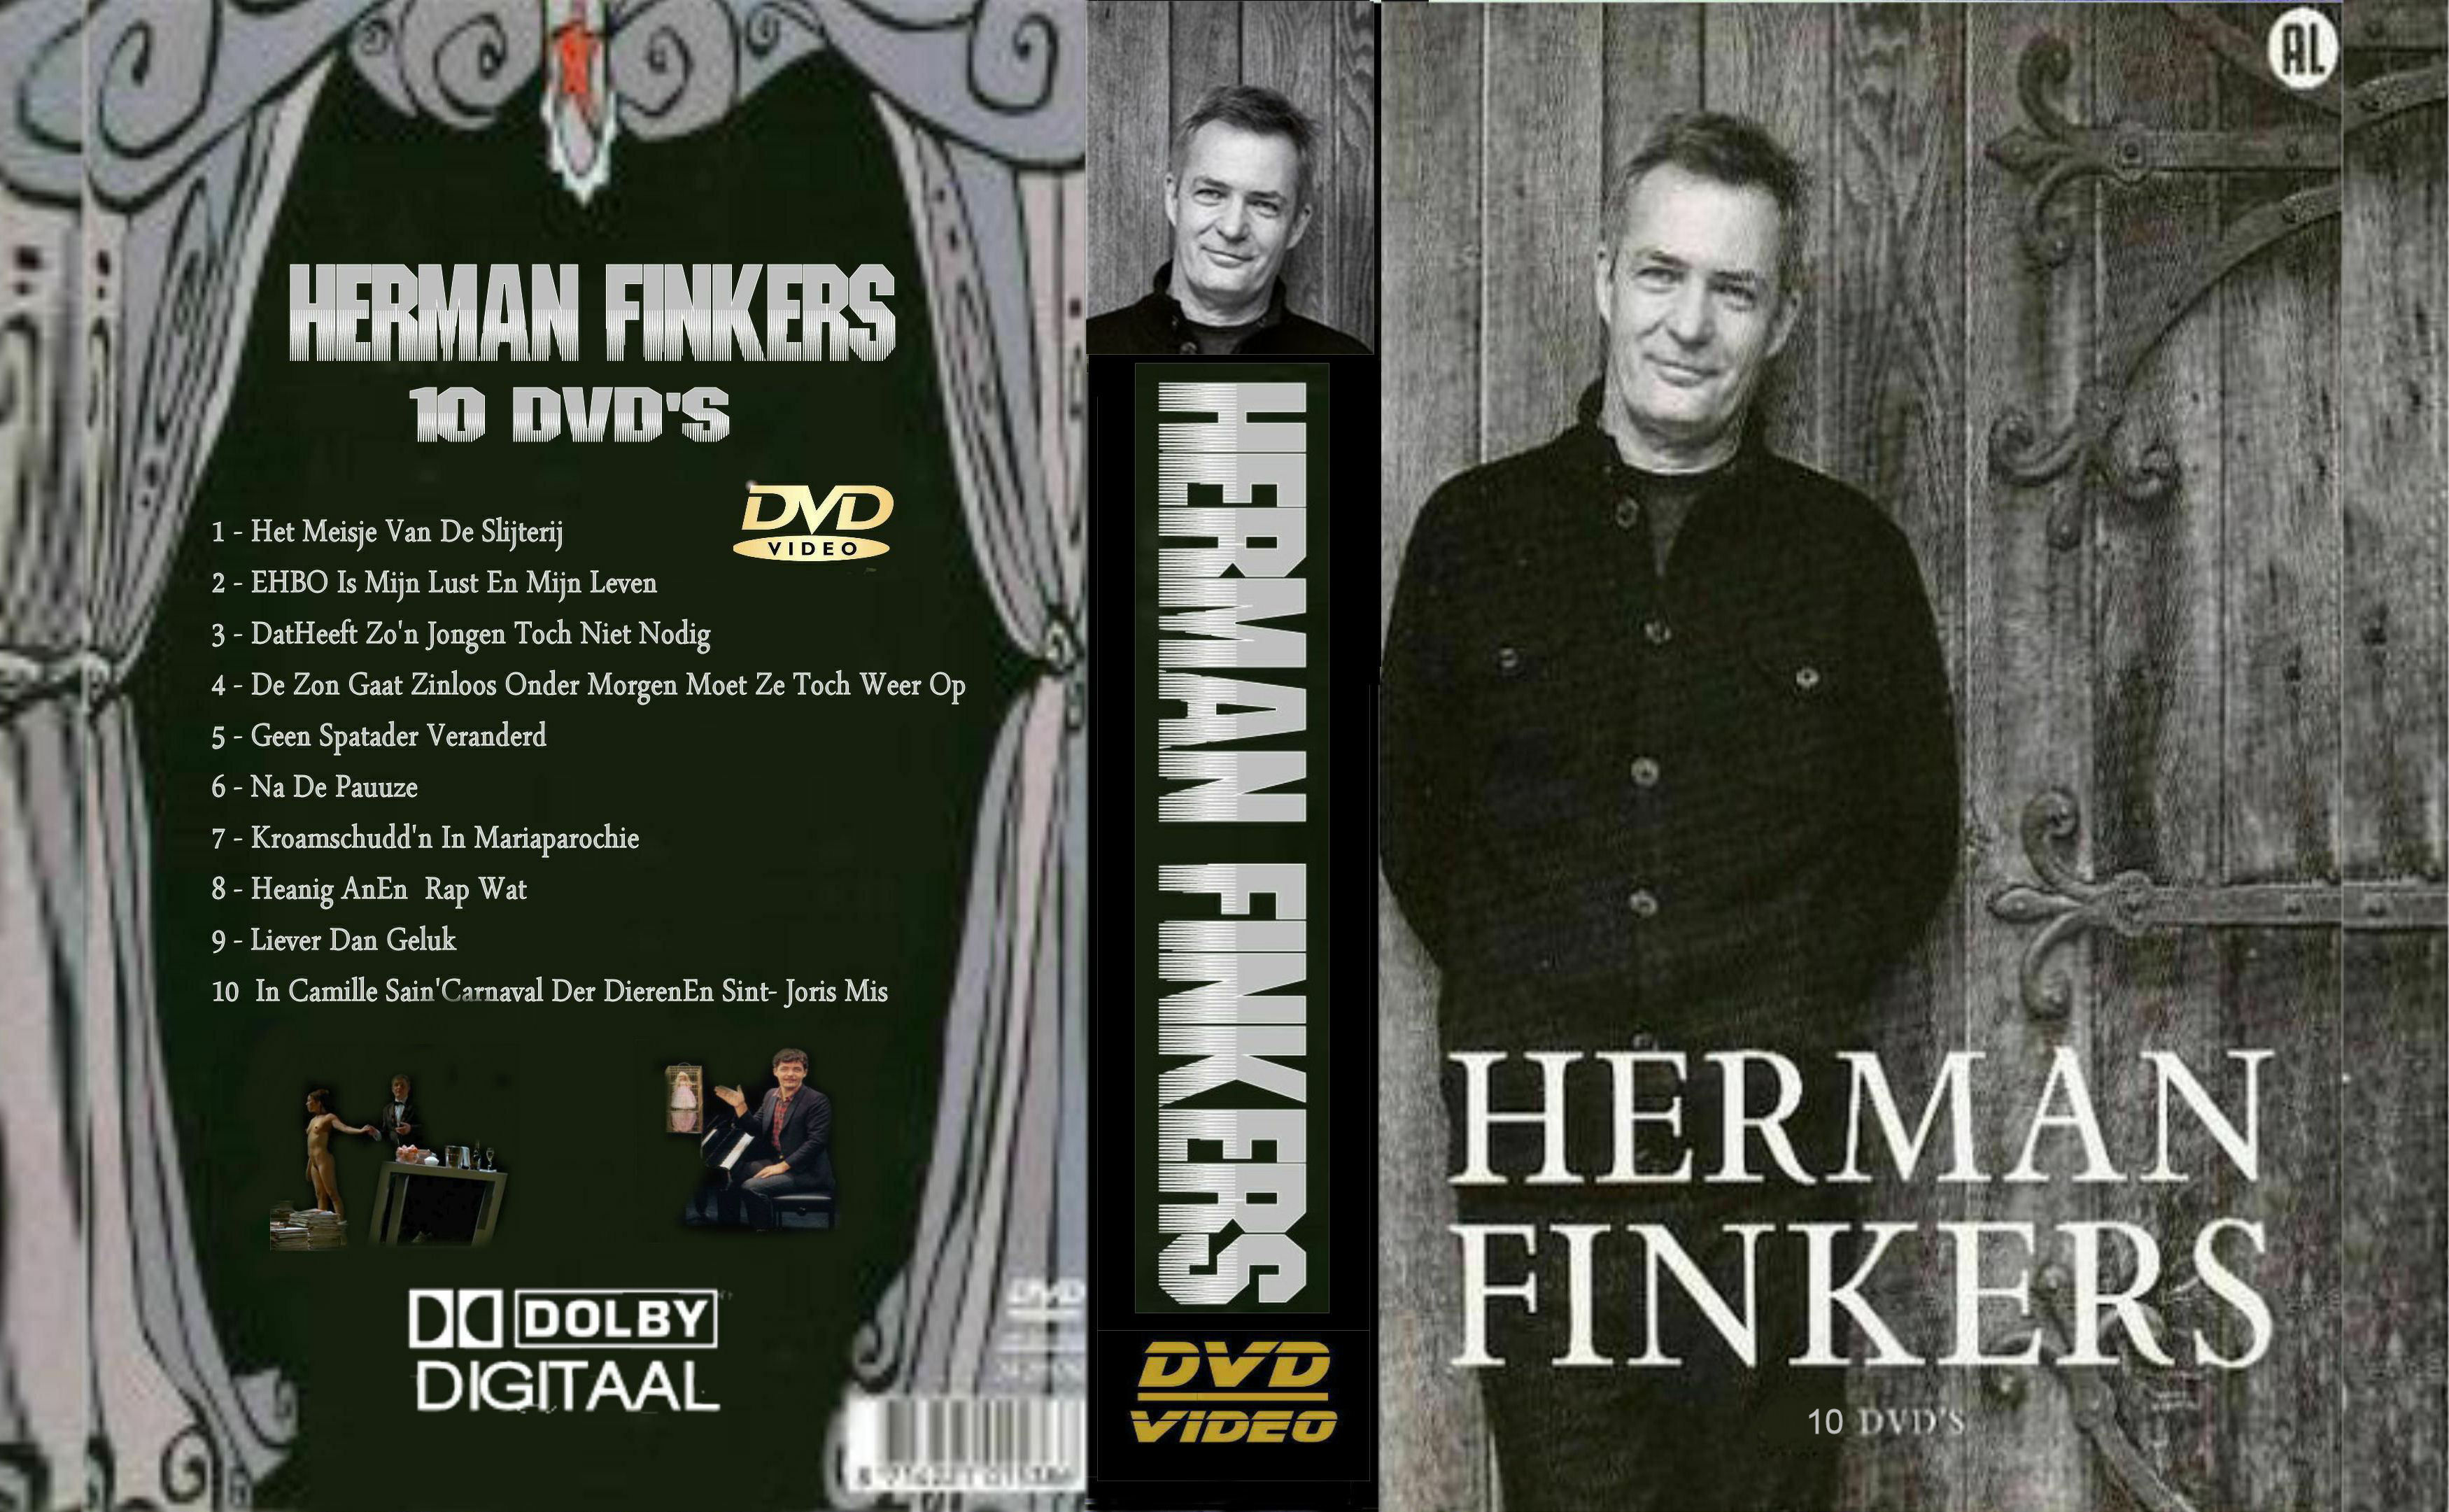 Herman Finkers Collectie DvD 1